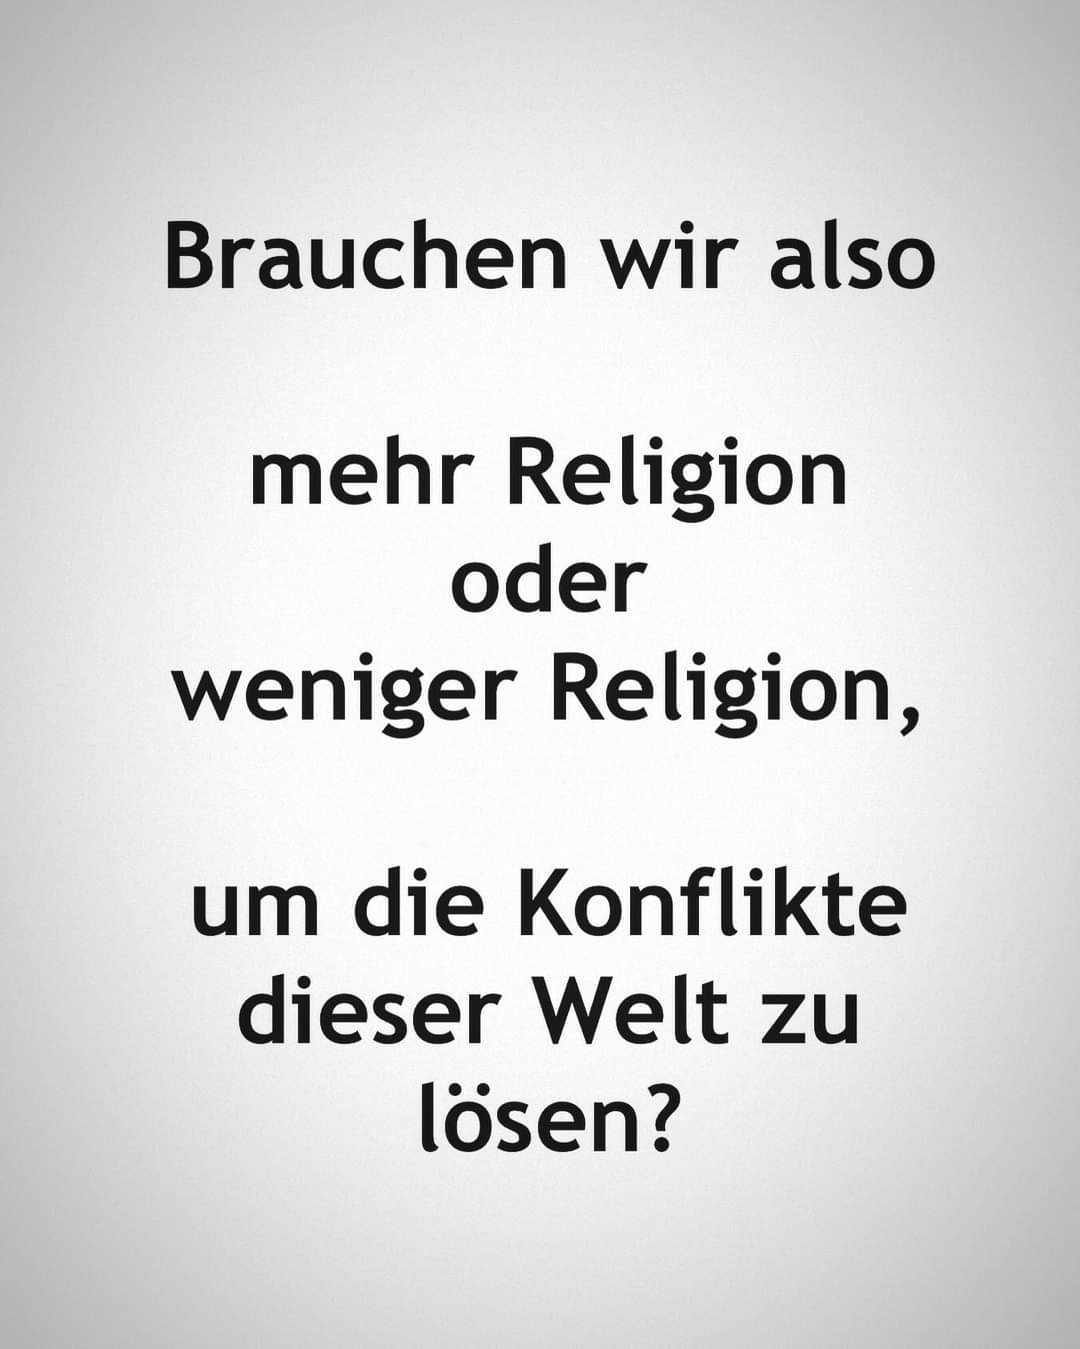 mehr oder weniger Religion?